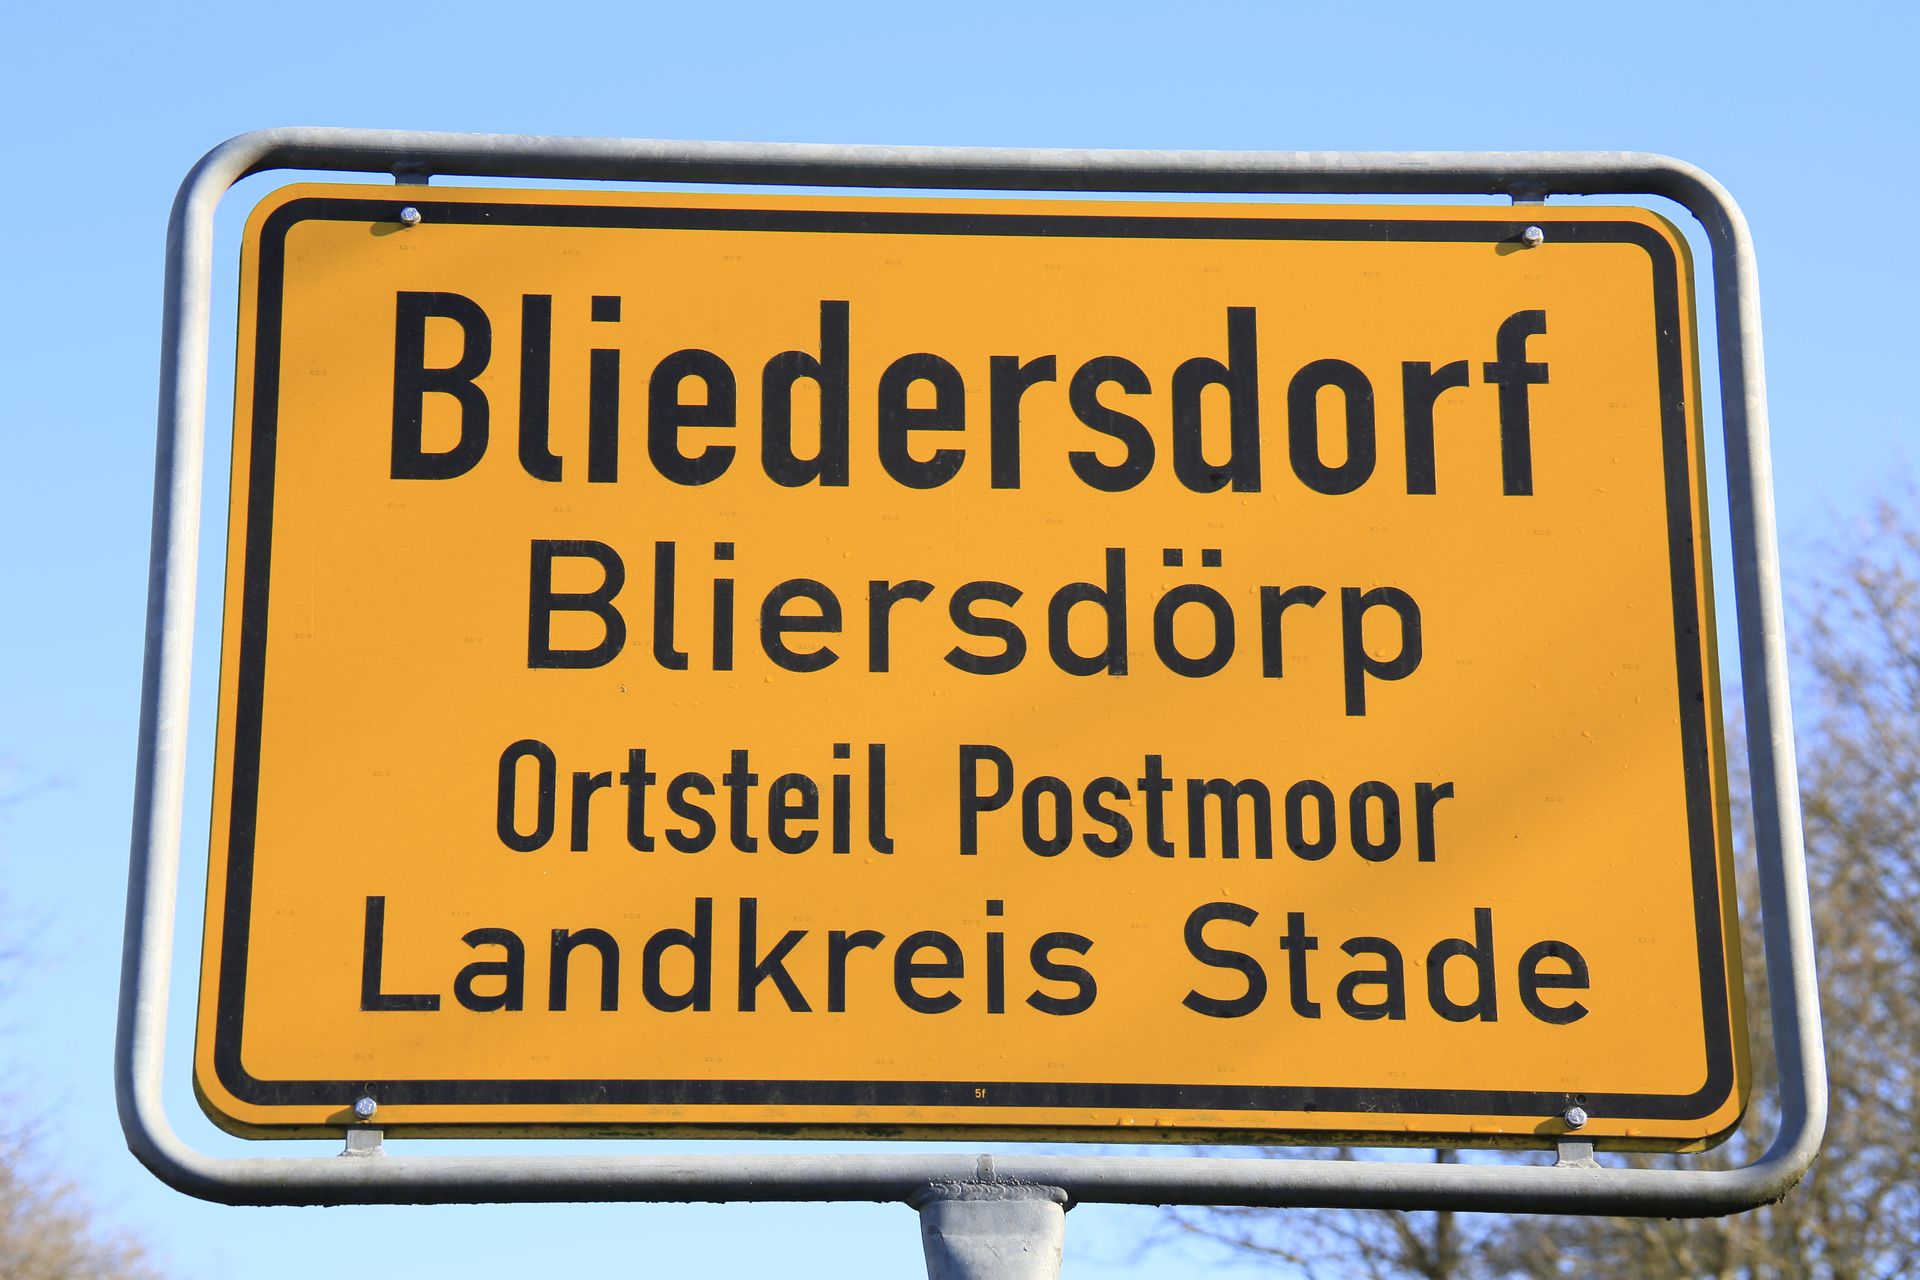 Postmoor, Ortsteil von Bliedersdorf